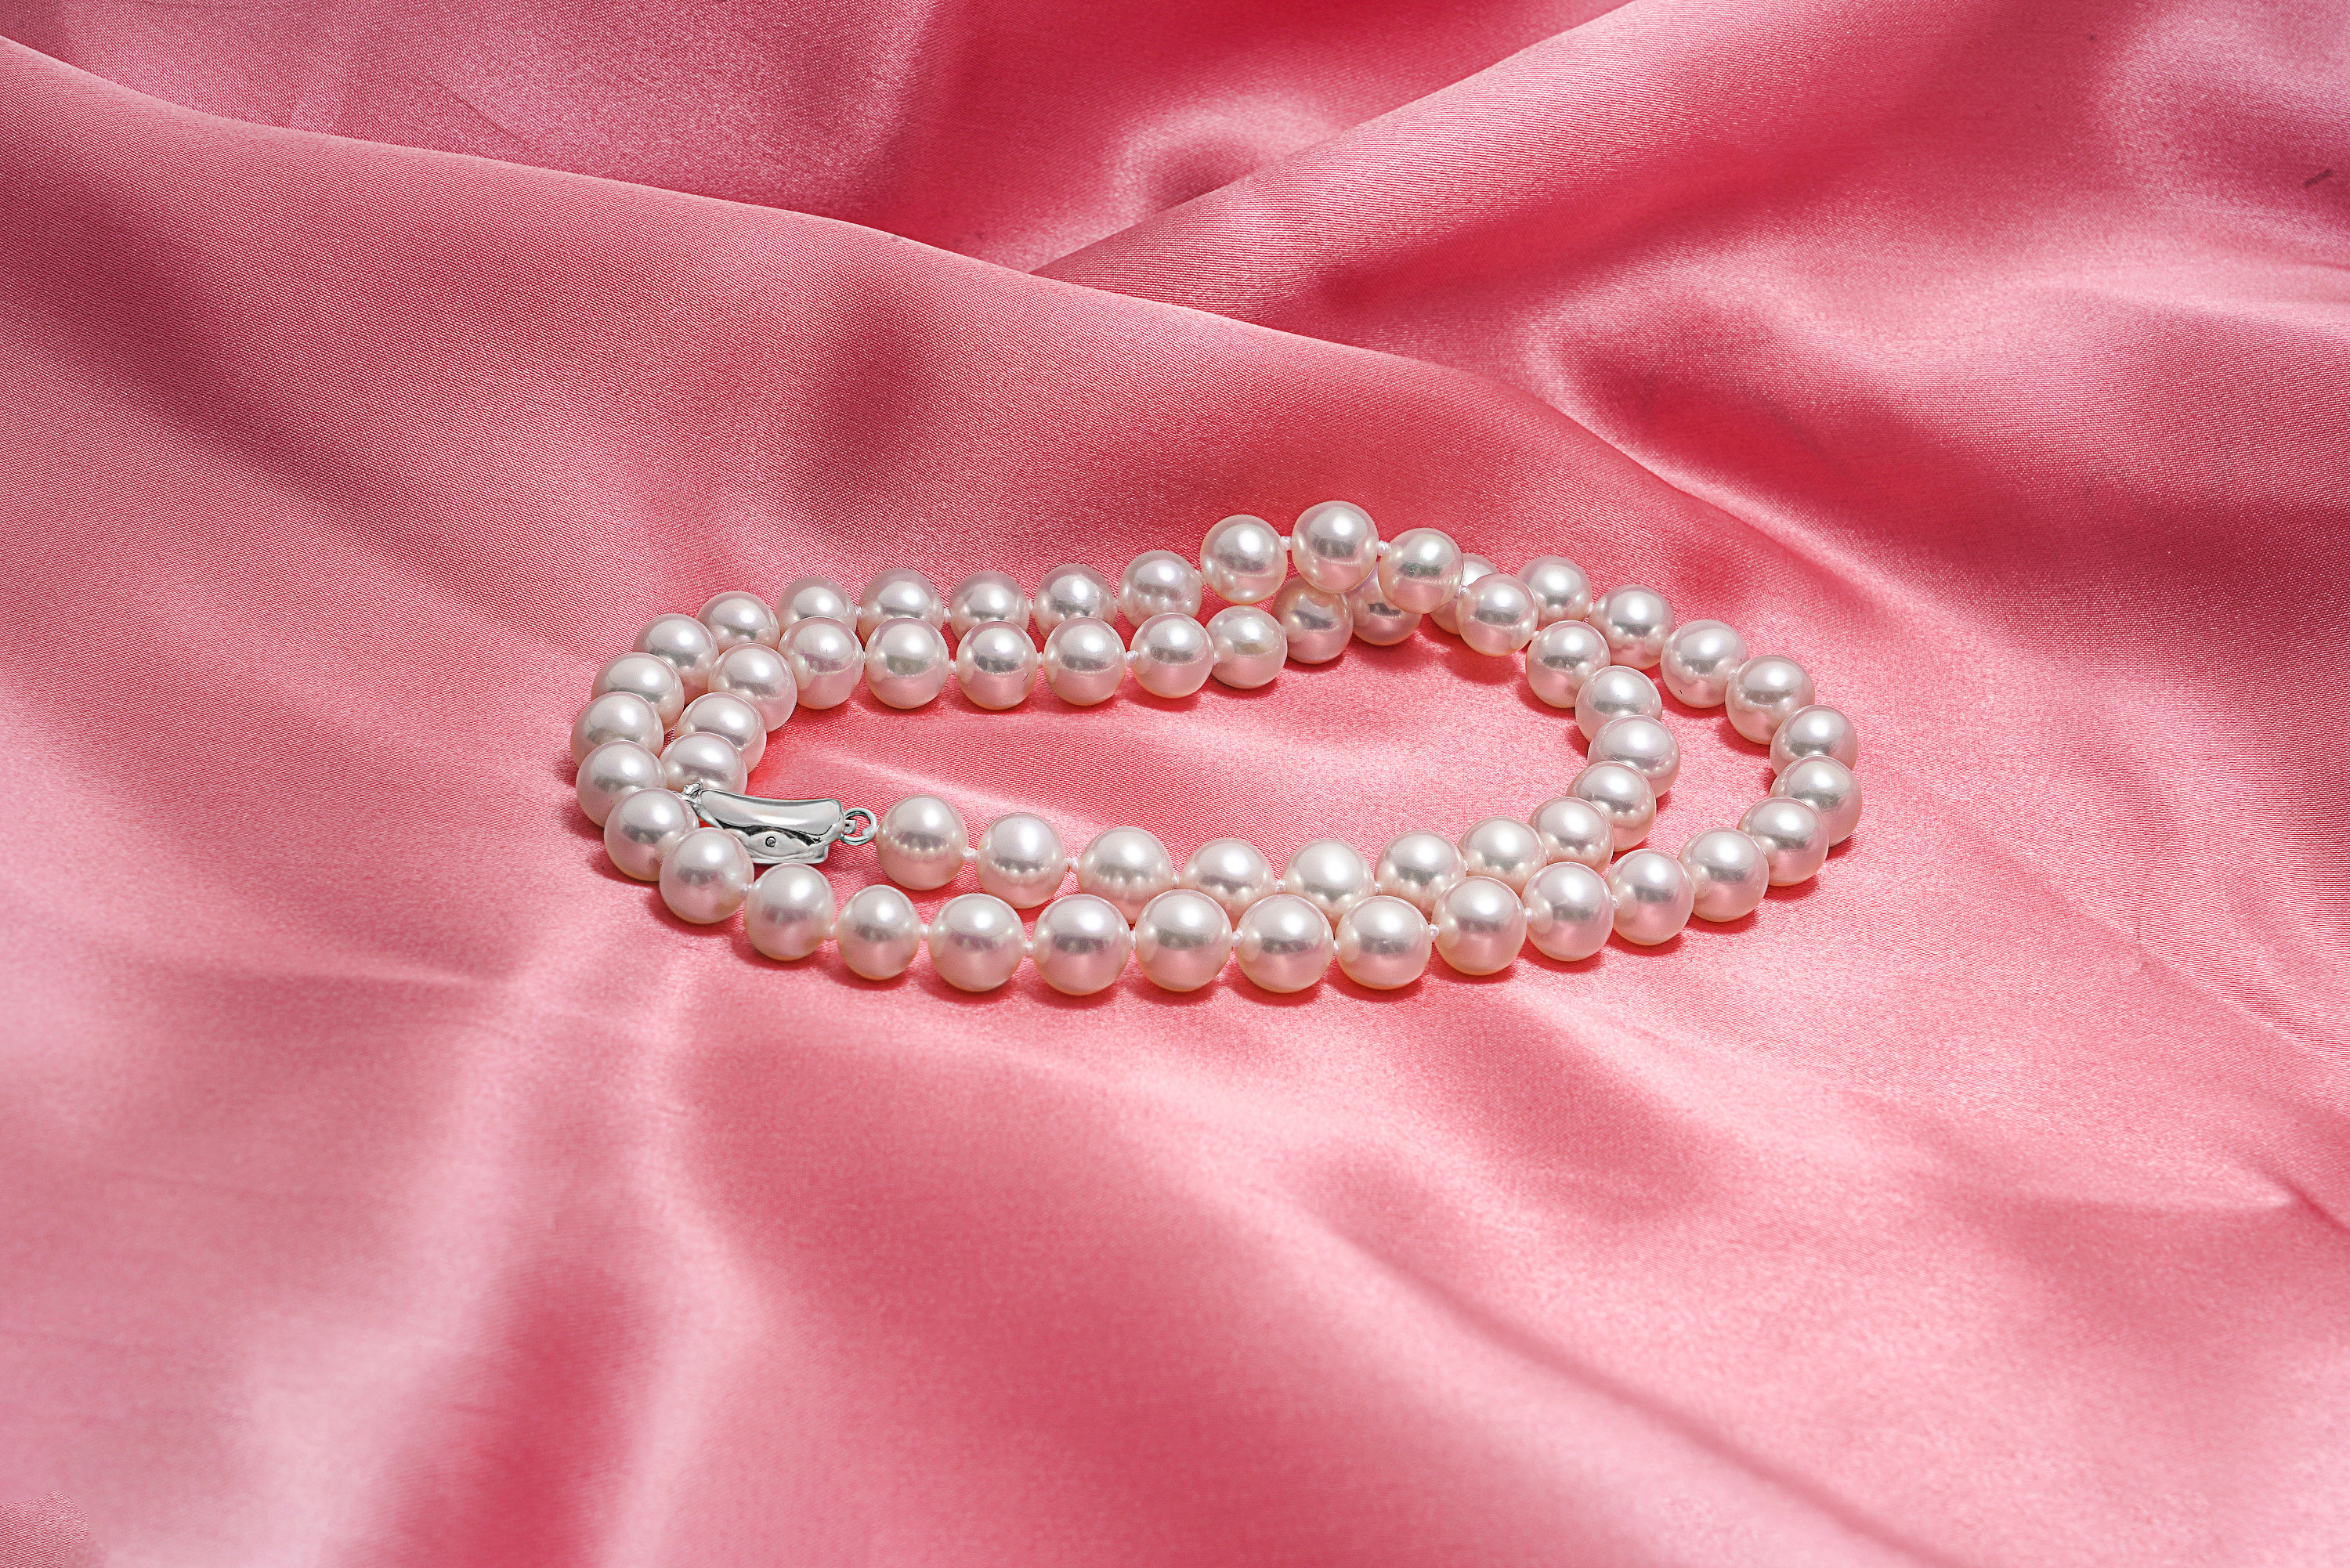 珍珠粉红色 库存图片. 图片 包括有 珠宝, 豪华, 装饰, 礼品, 女孩, 项链, 附注, 魅力, 珠子 - 7977815